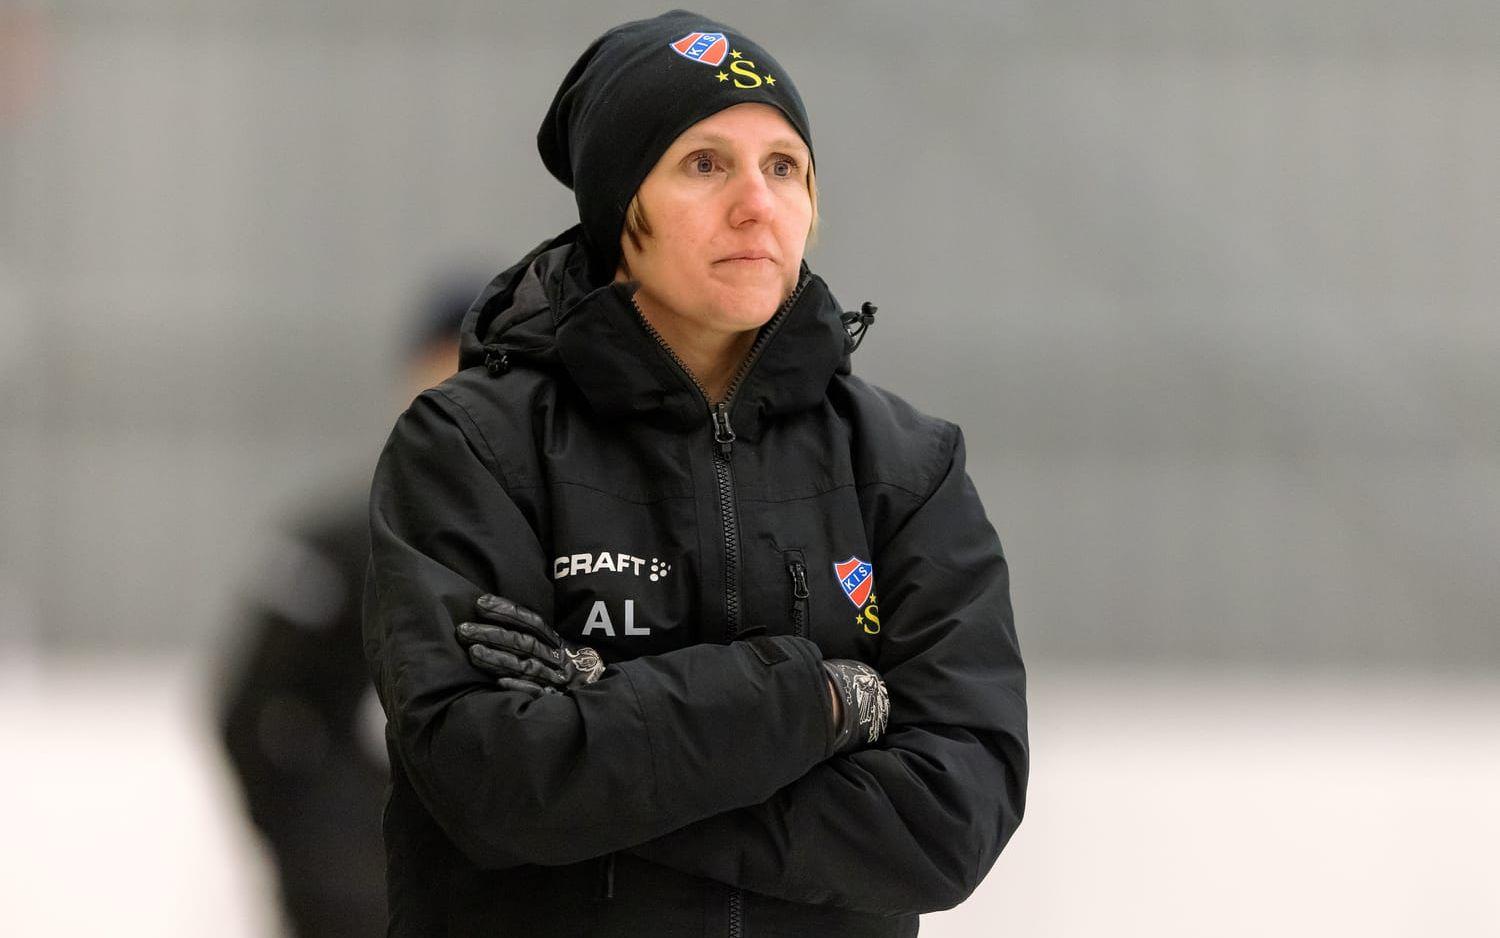 KS bandys tränare Annika Lundberg är inte nöjd med prestationen mot Västerås